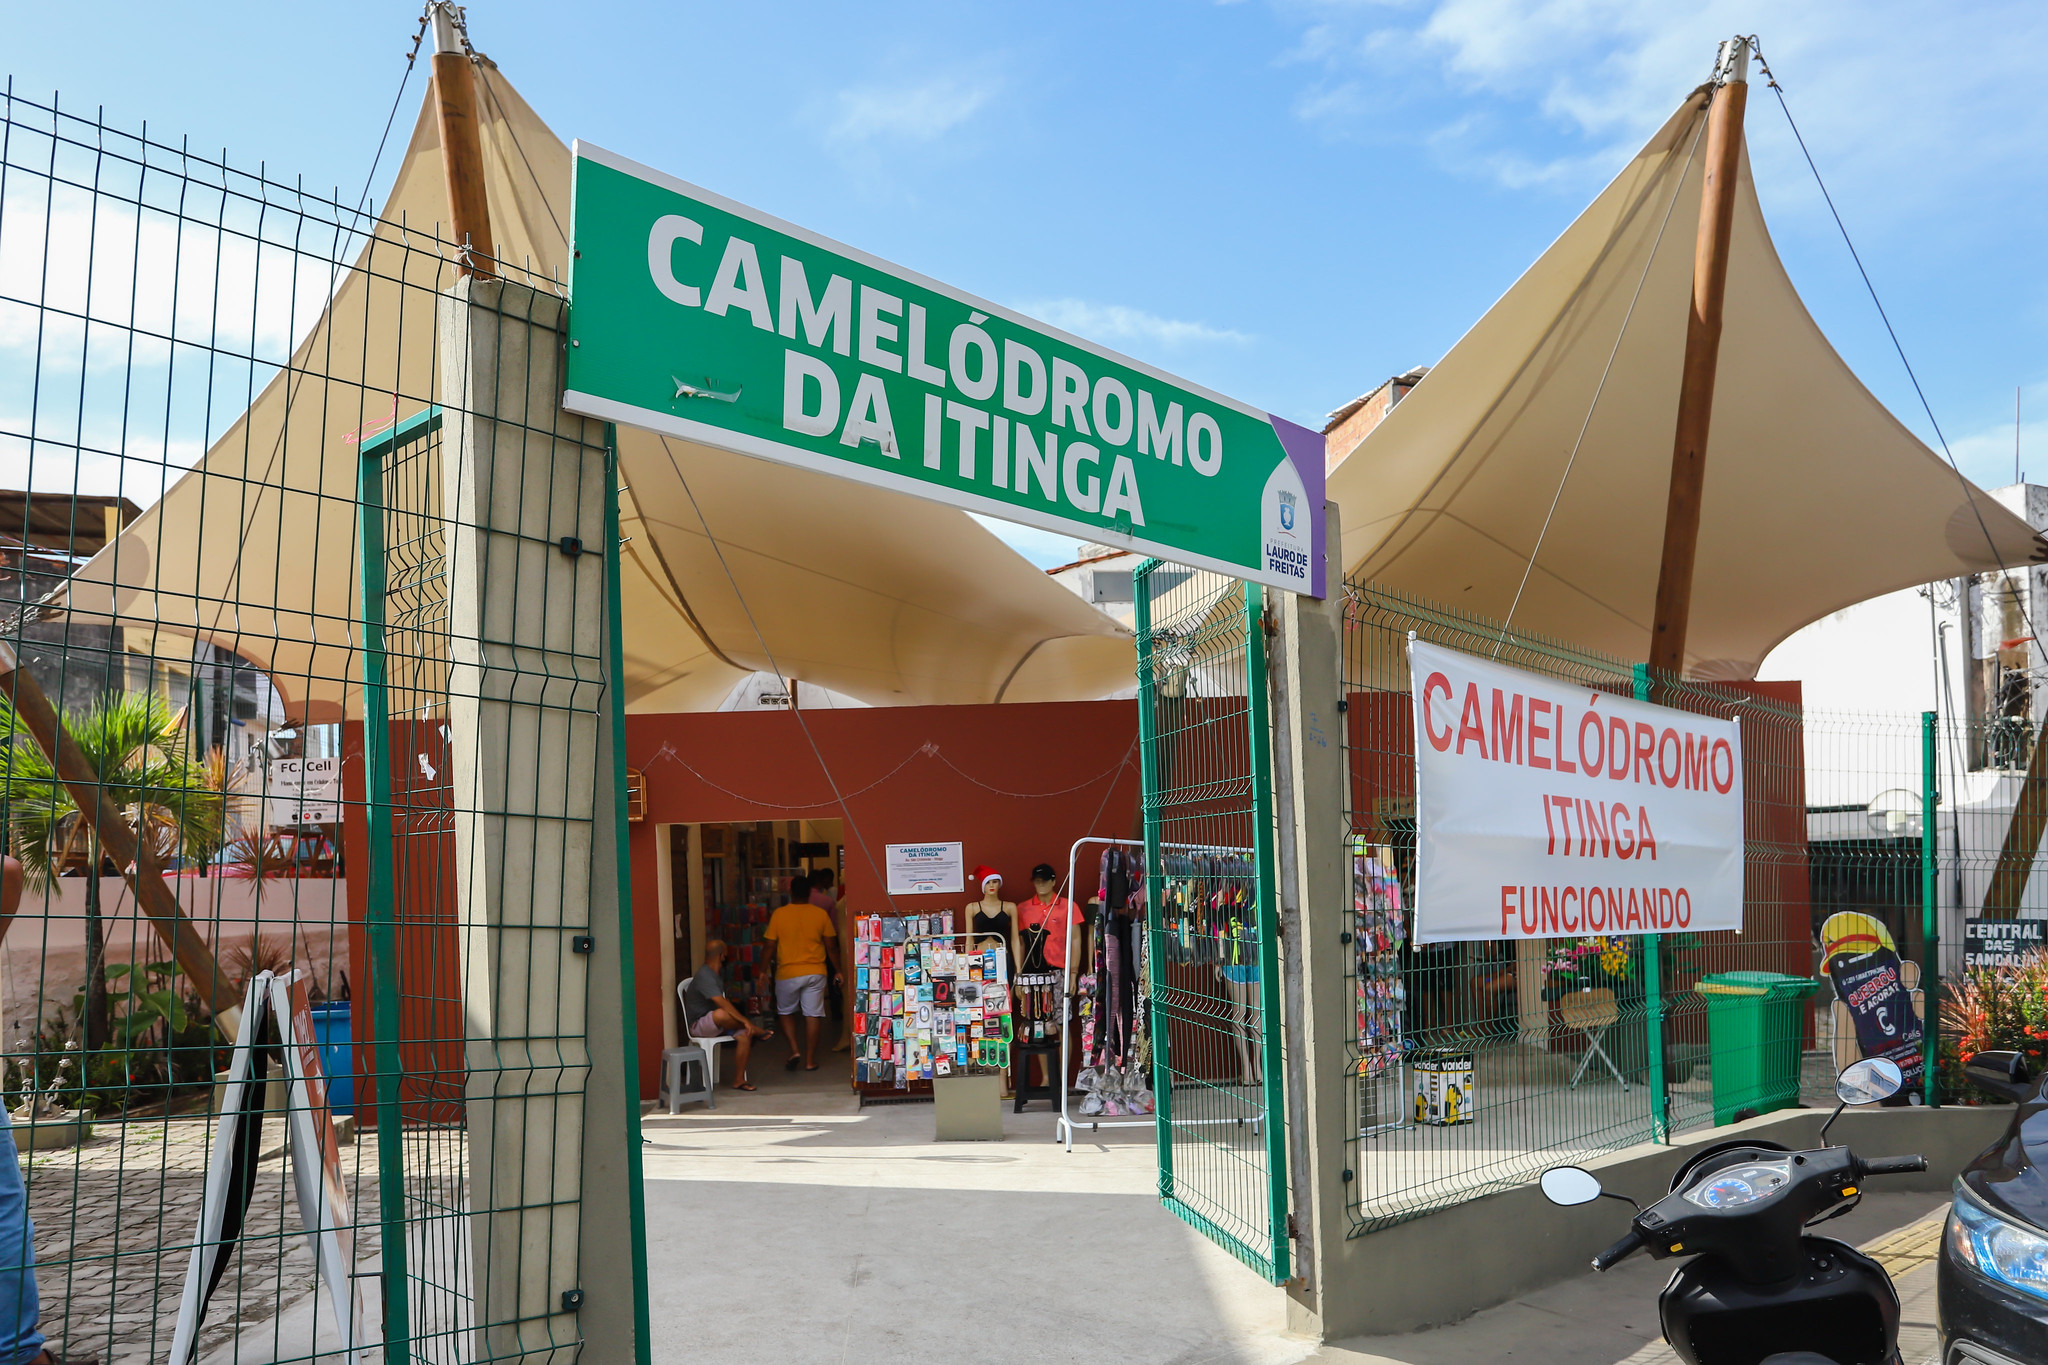 Camel�dromo da Itinga garante mais conforto e seguran�a para ambulantes e clientes